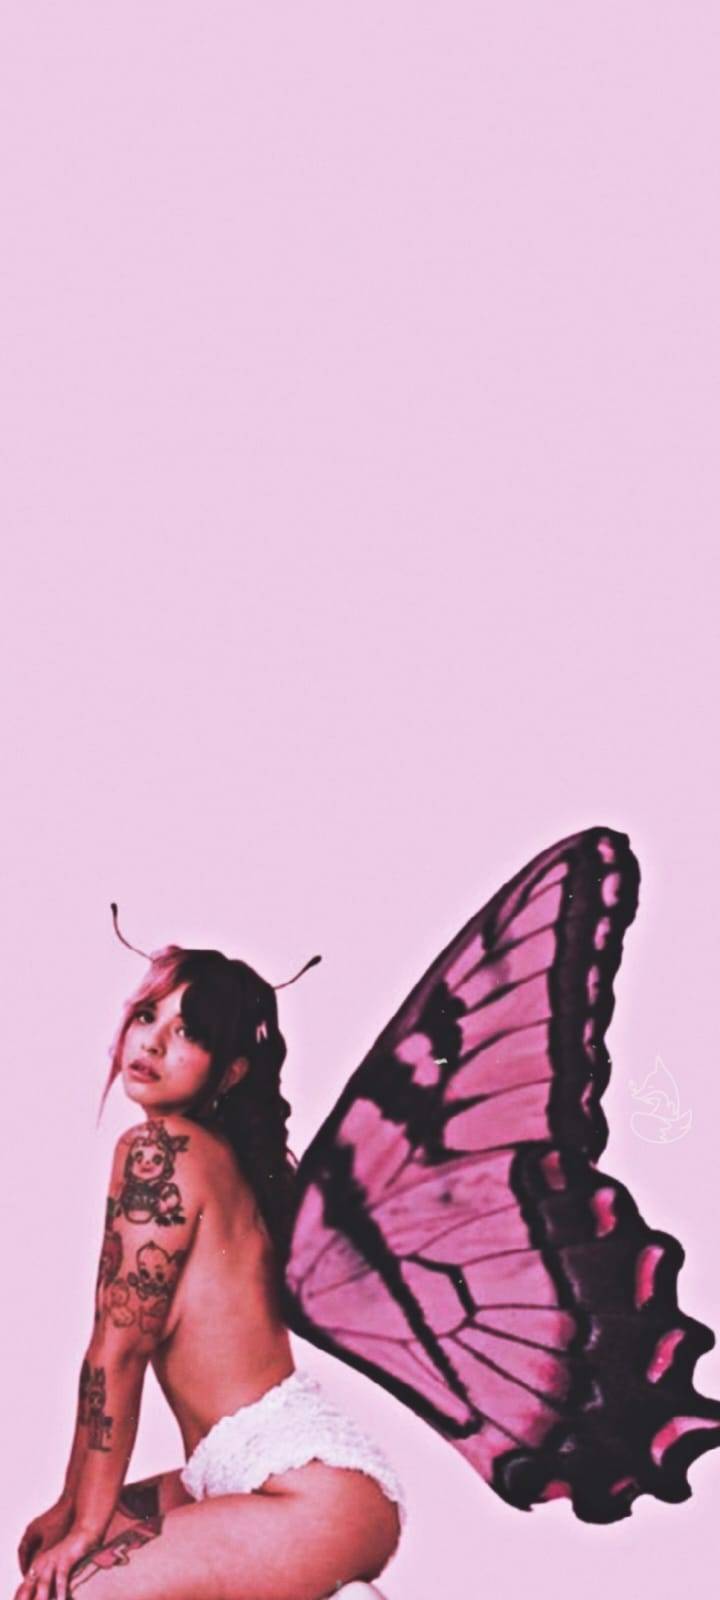 Aesthetic butterfly wallpaper for phone. - Melanie Martinez